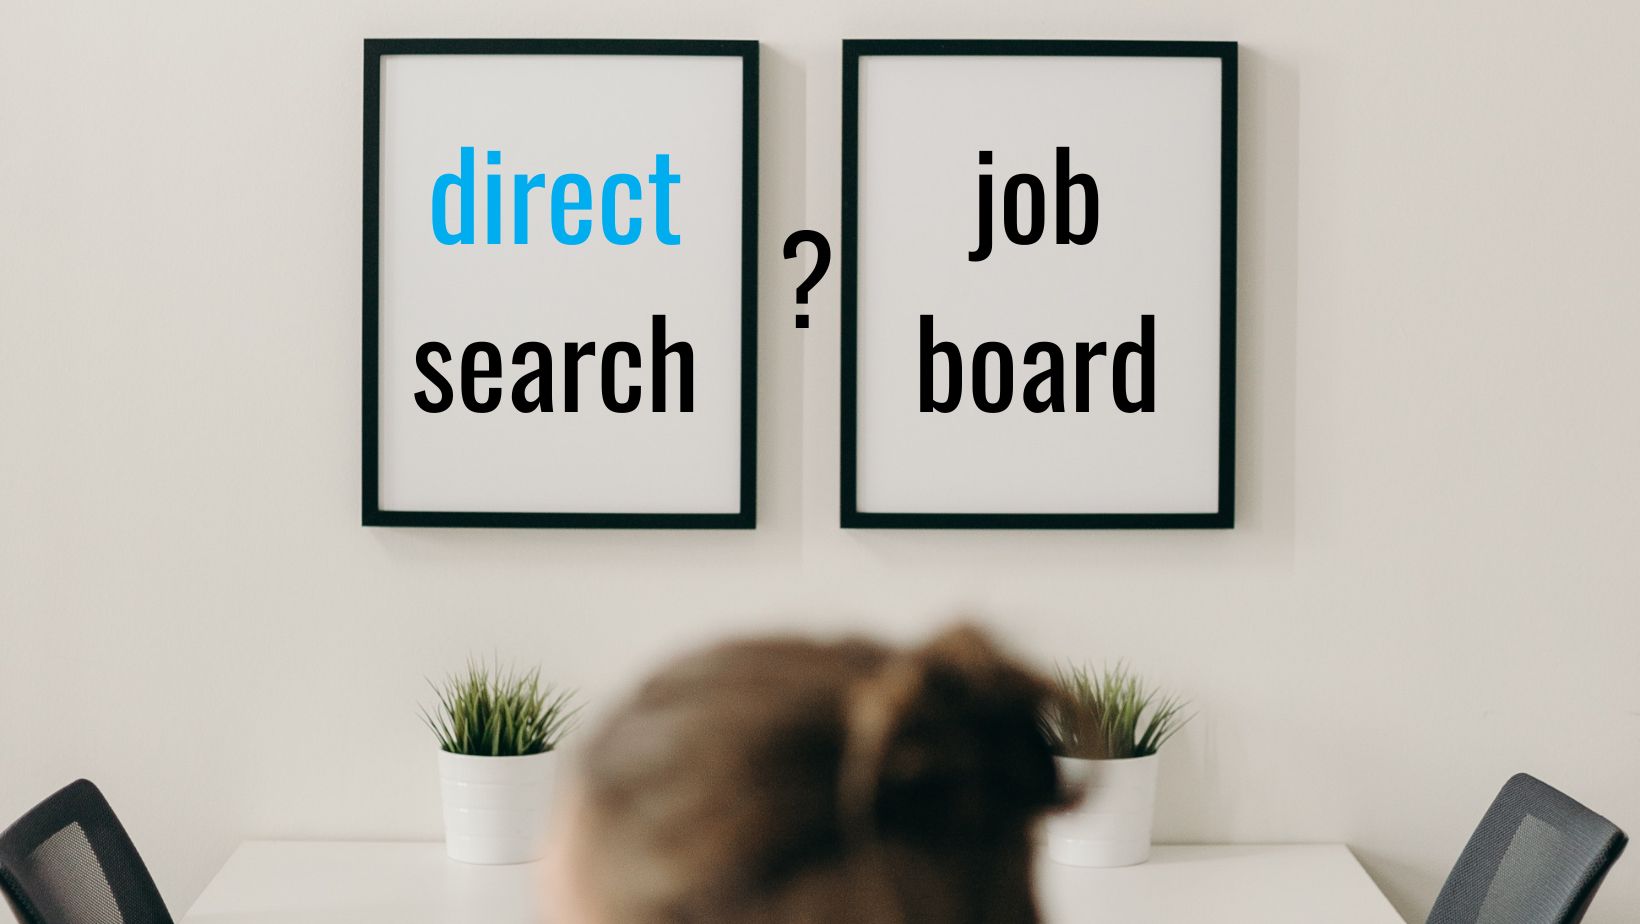 Direct search w rekrutacji - kiedy sprawdza się najlepiej jak dokonać wyboru